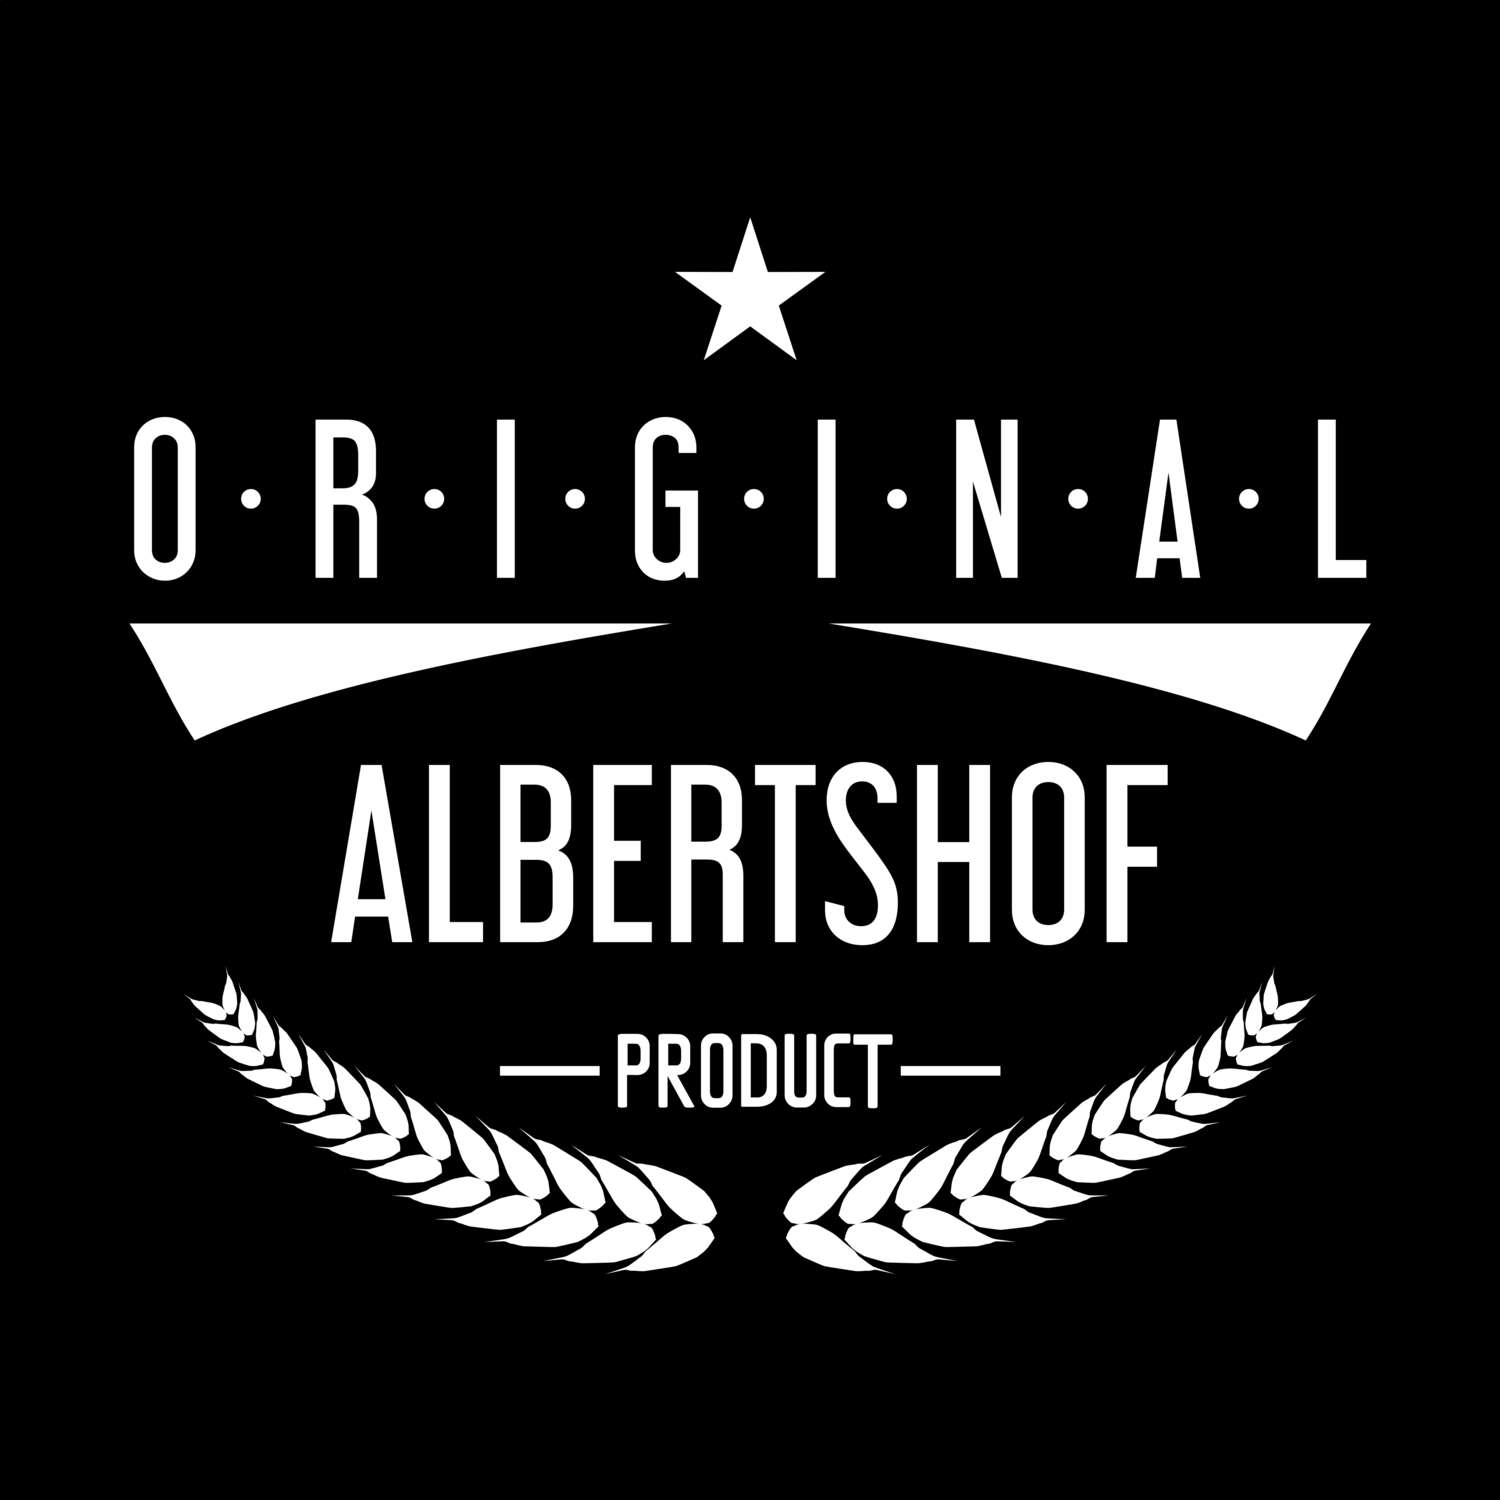 Albertshof T-Shirt »Original Product«